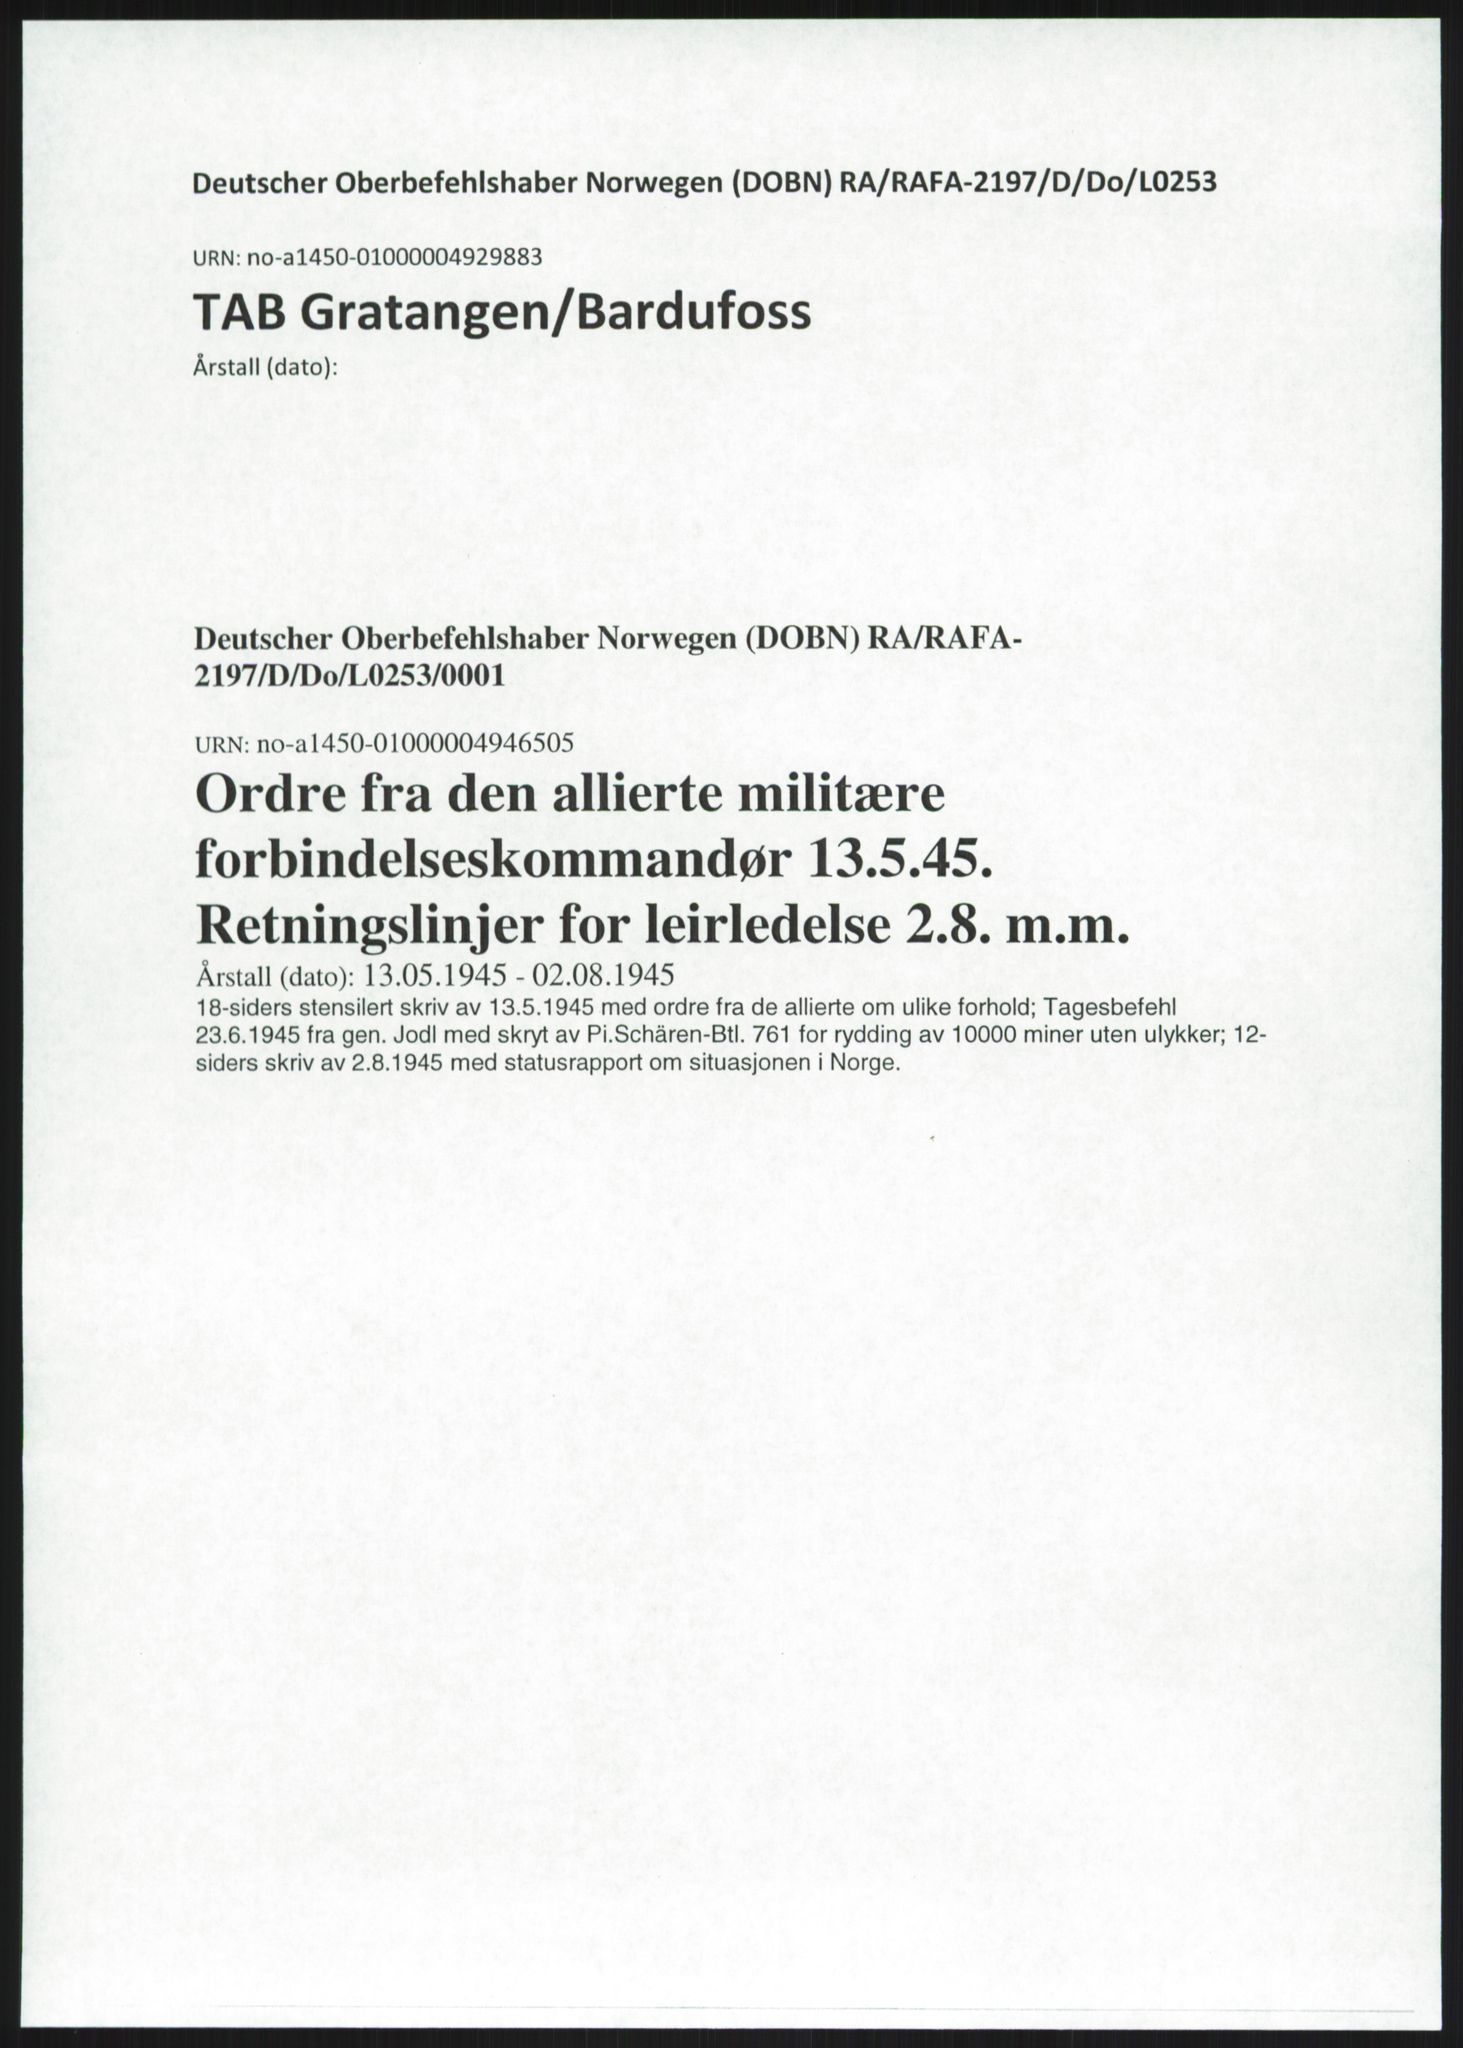 Deutscher Oberbefehlshaber Norwegen (DOBN), RA/RAFA-2197/D/Do/L0253/0001: TAB Gratangen/Bardufoss / Ordre fra den allierte militære forbindelseskommandør 13.5.45. Retningslinjer for leirledelse 2.8. m.m., 1945